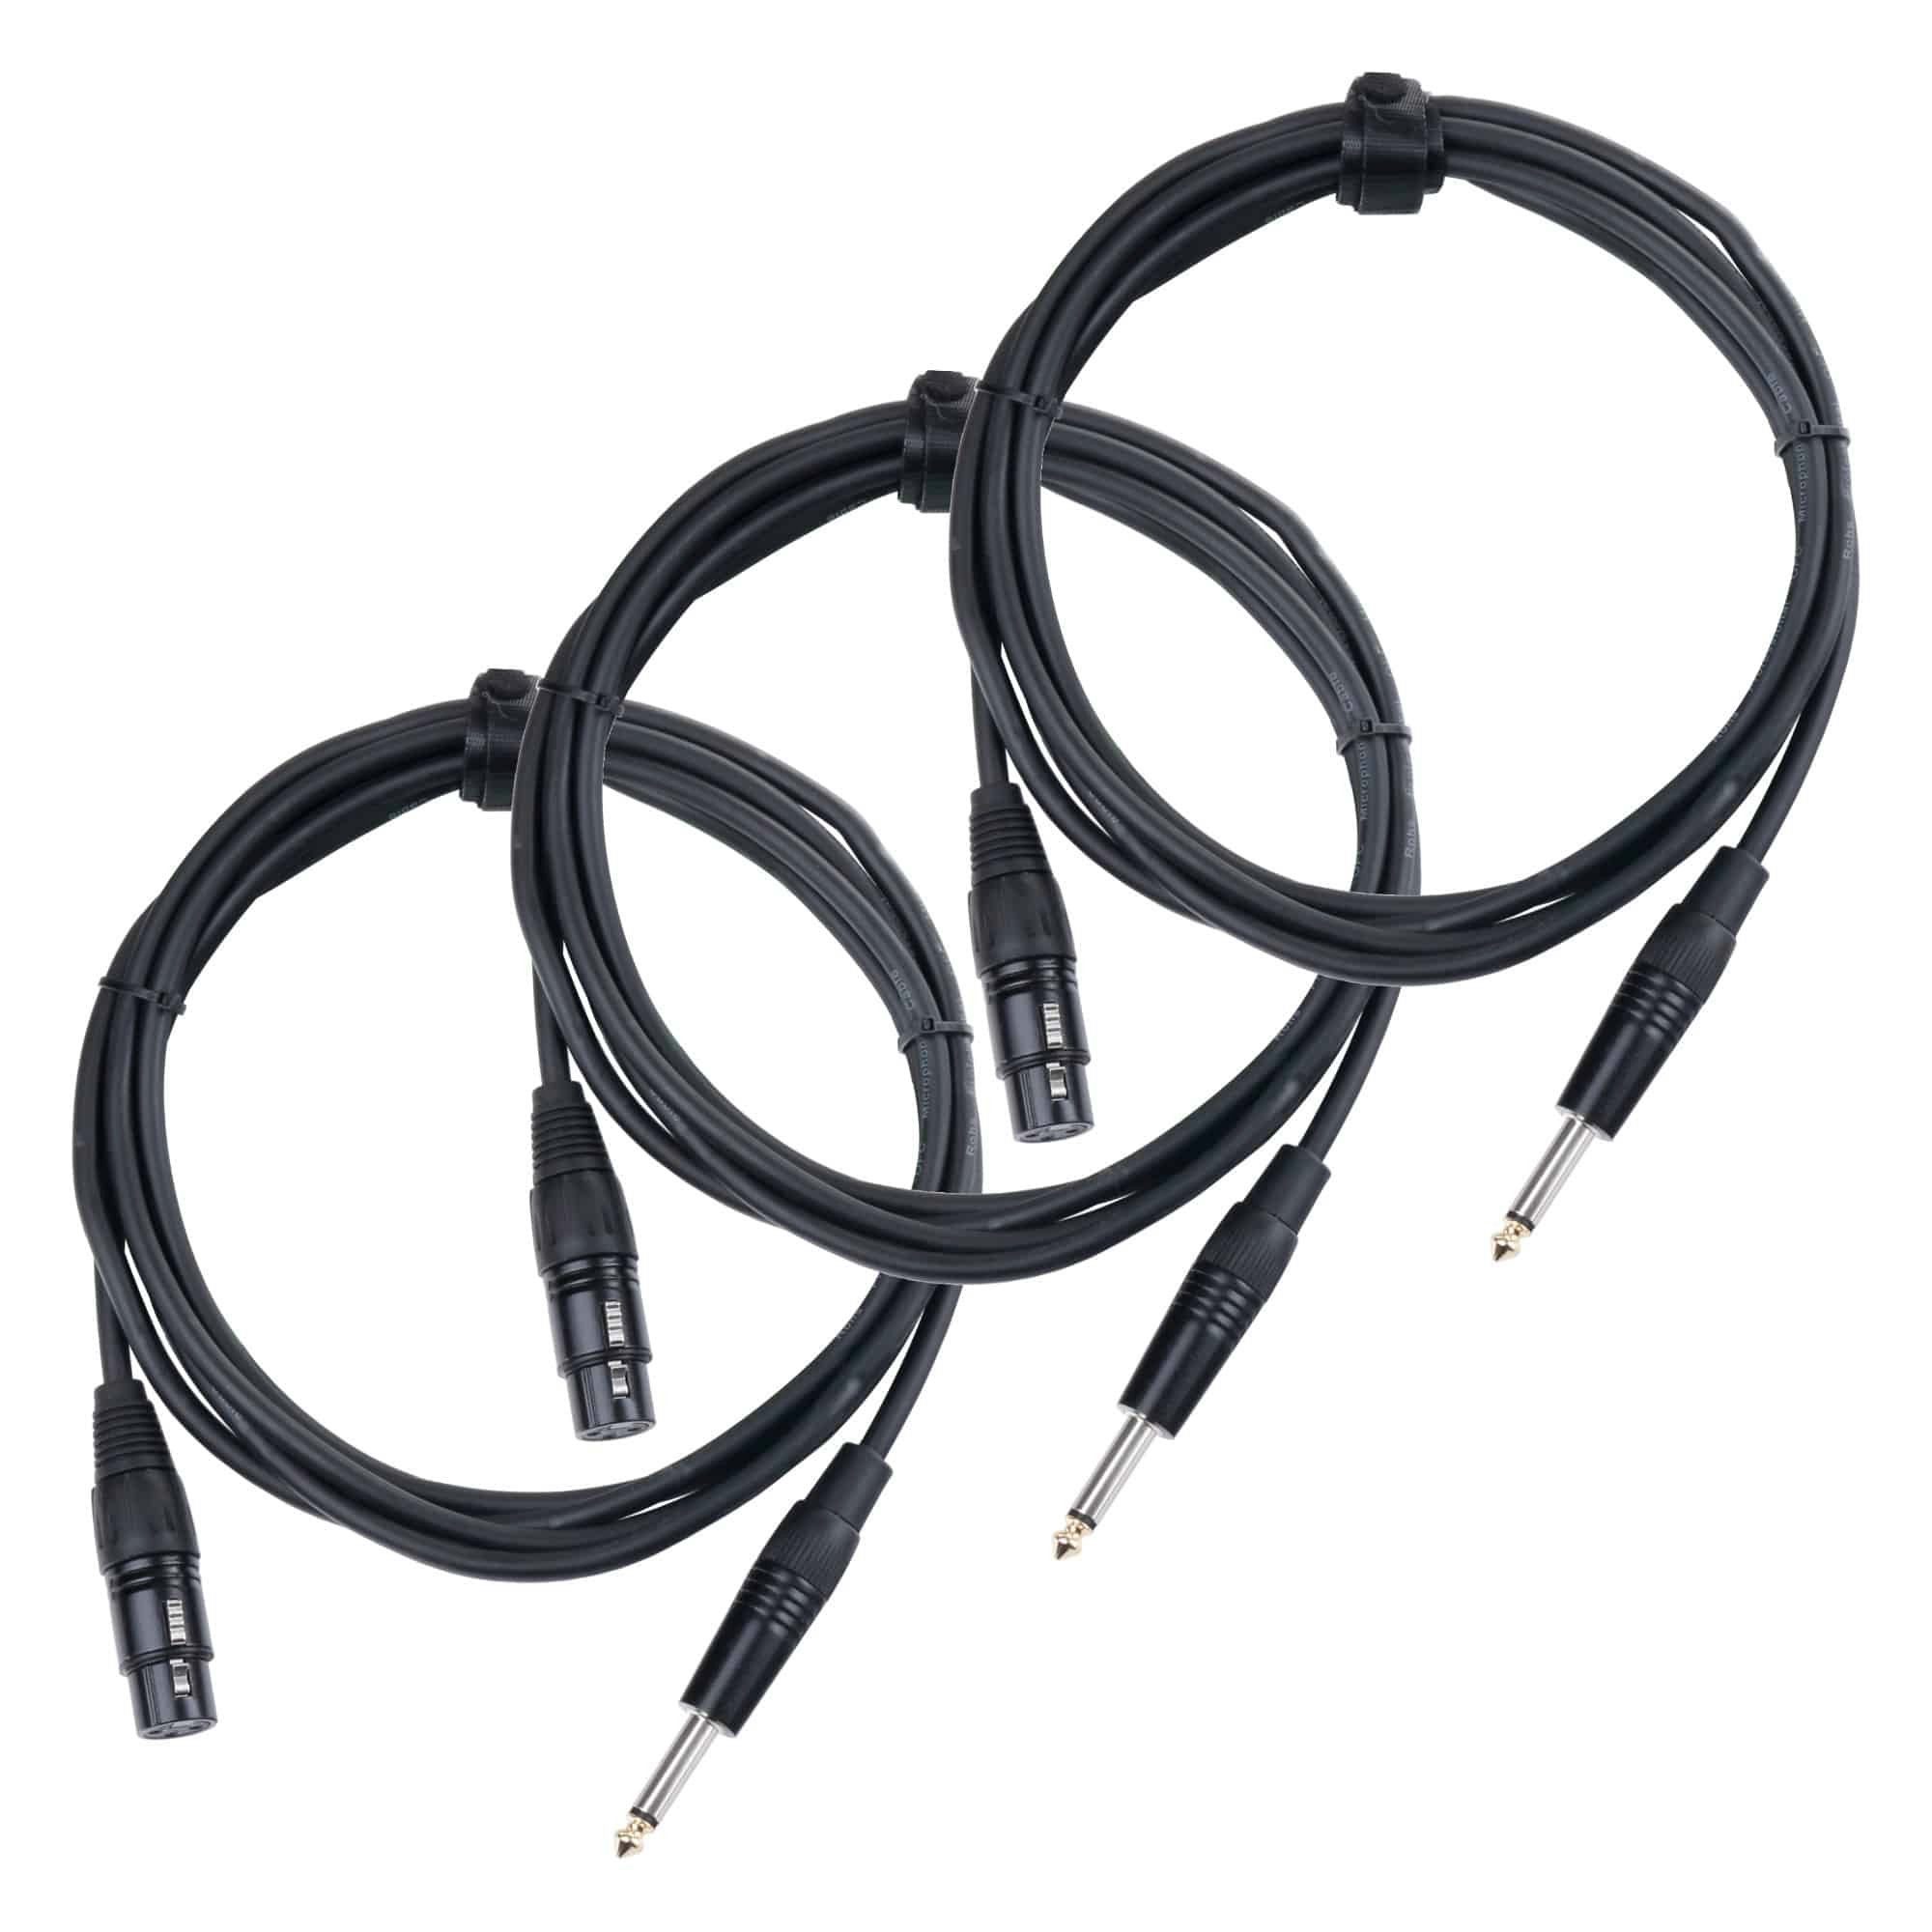 Pronomic 3x Stage XFJ-2.5 Mikrofonkabel Audio-Kabel, Klinke 6.3mm Mono, XLR  3-polig female (250 cm), Hochwertige Stecker und Schirmung